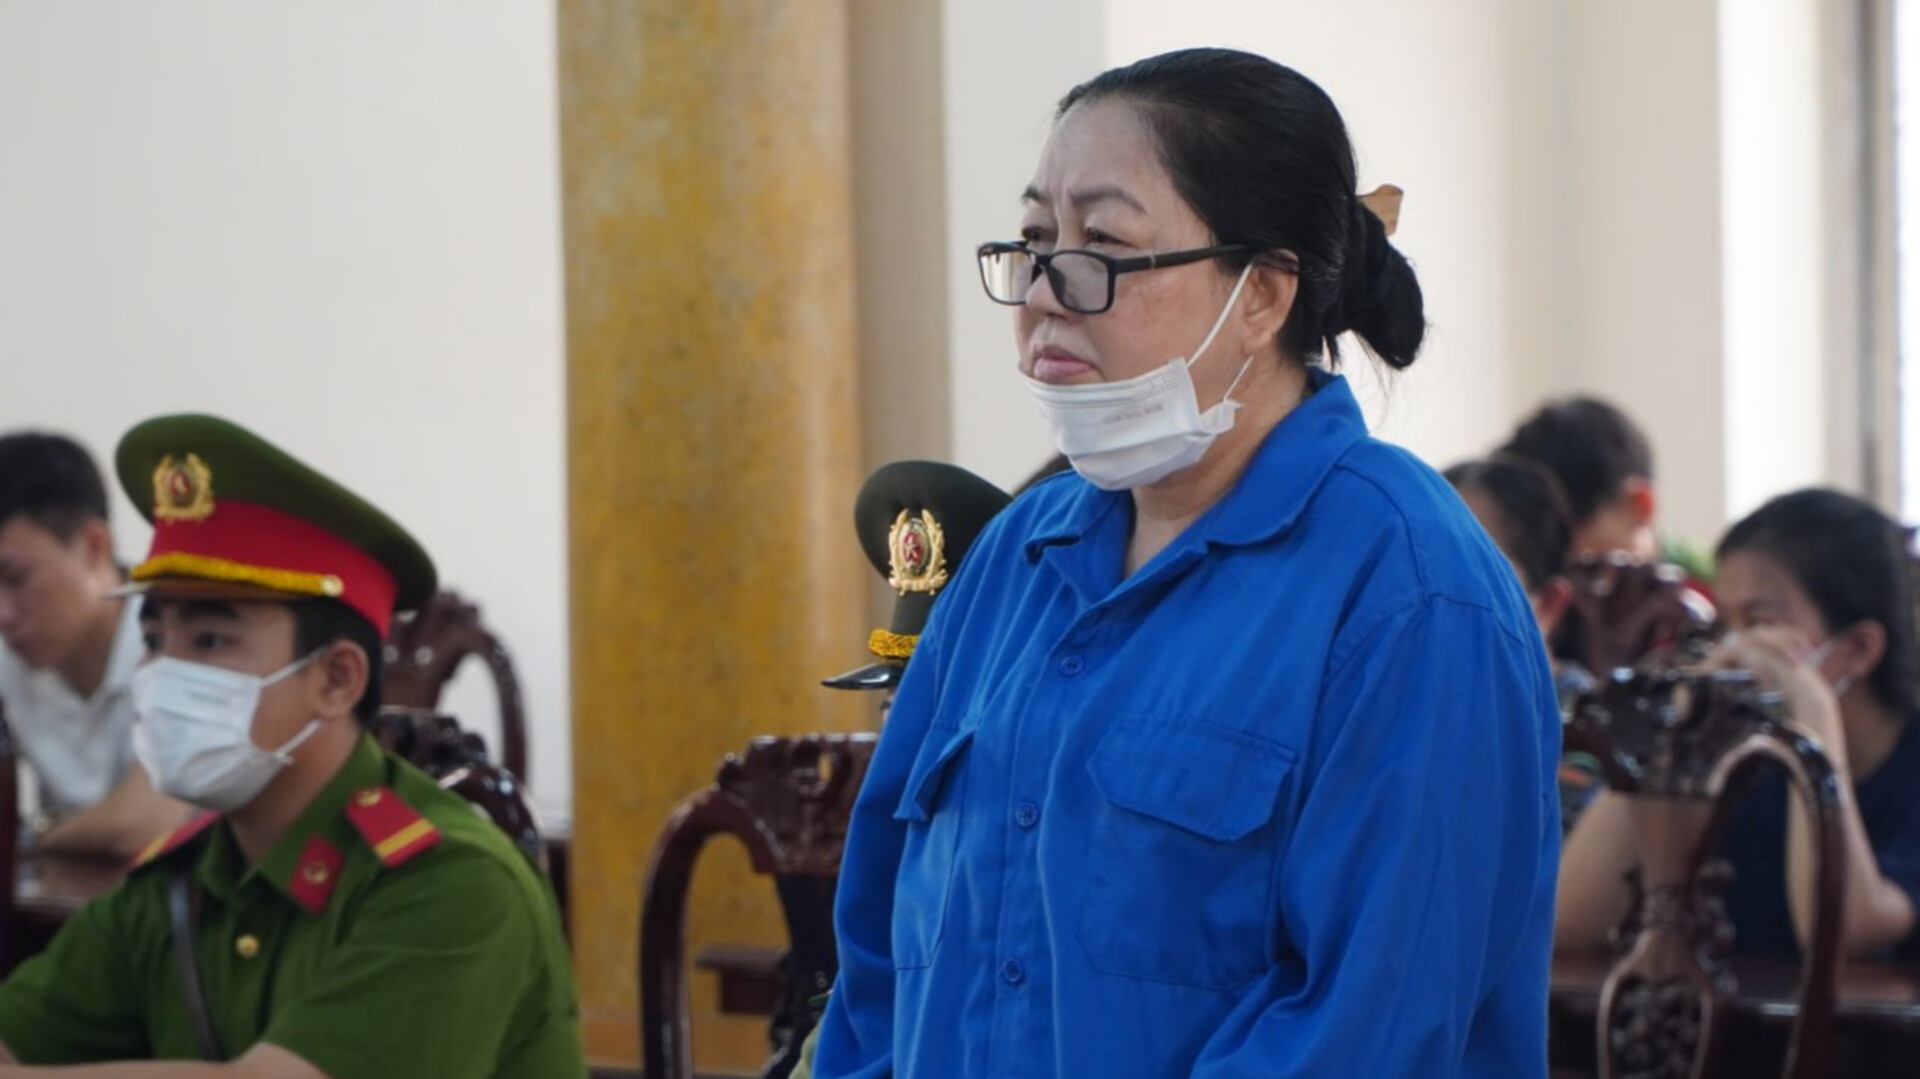 Trùm buôn lậu Mười Tường được sự tiếp tay của cựu cảnh sát ở An Giang bị đưa ra xét xử - Ảnh 2.